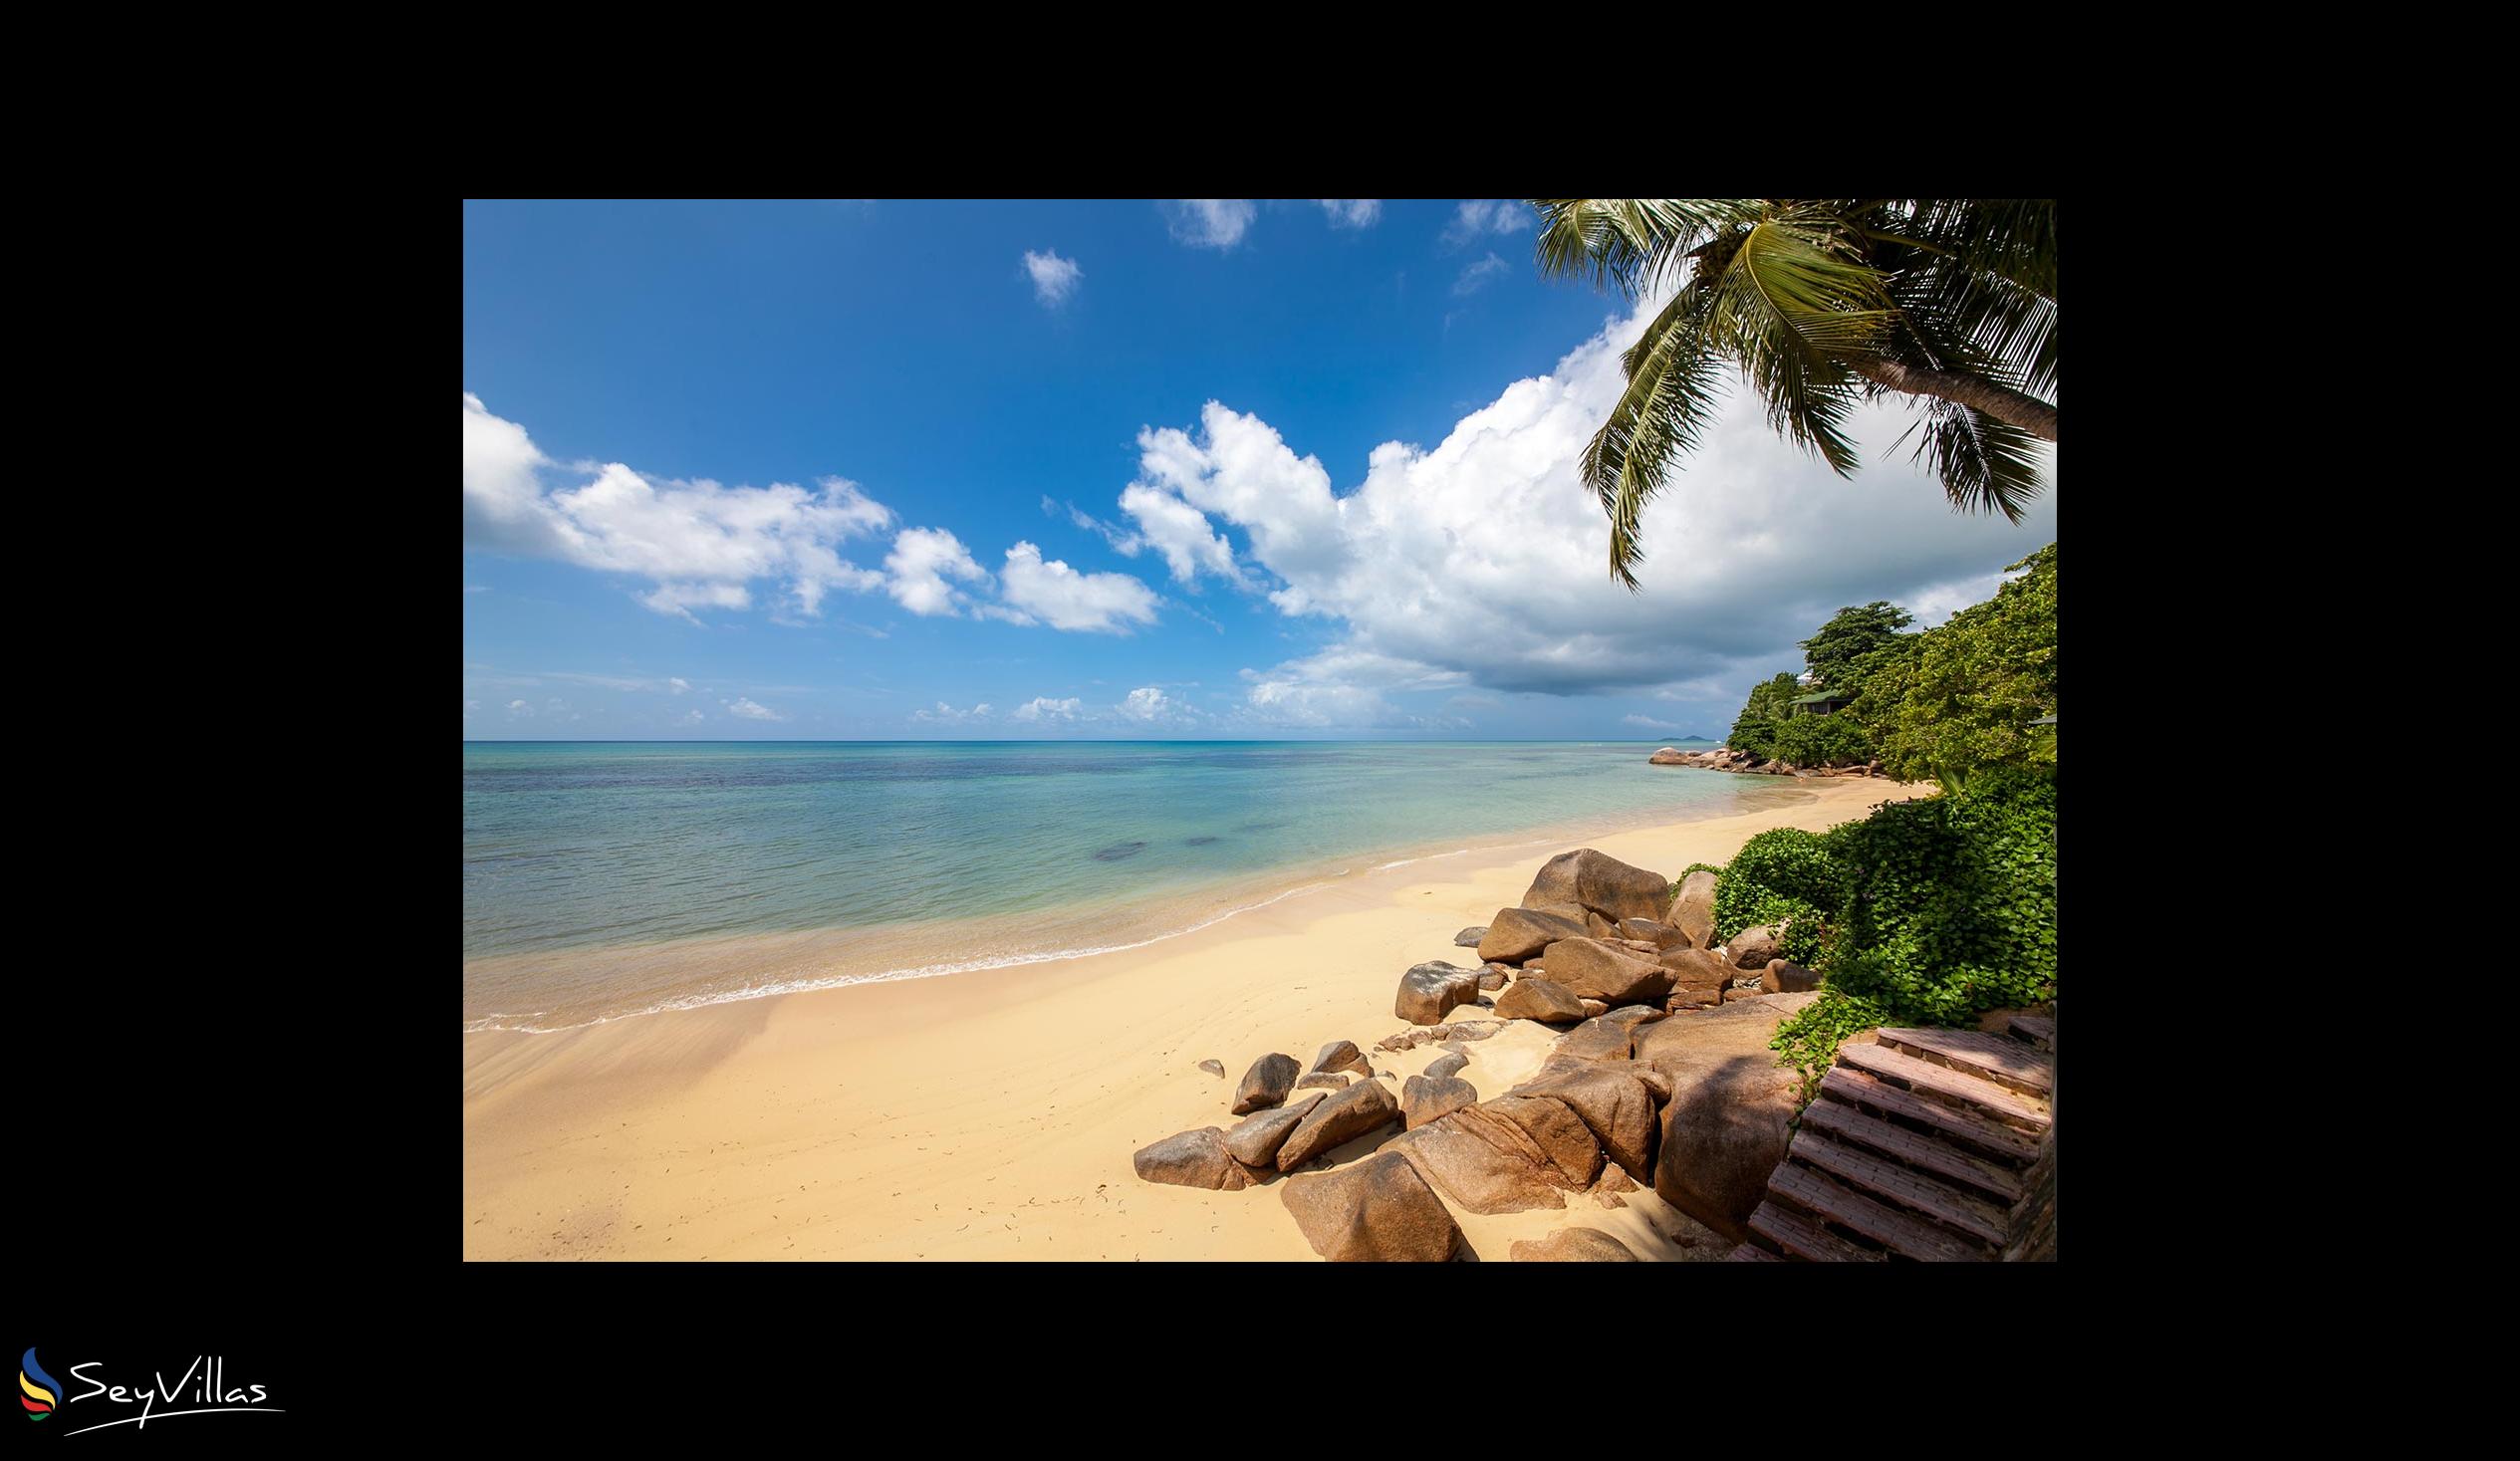 Photo 45: Coco de Mer & Black Parrot Suites - Beaches - Praslin (Seychelles)